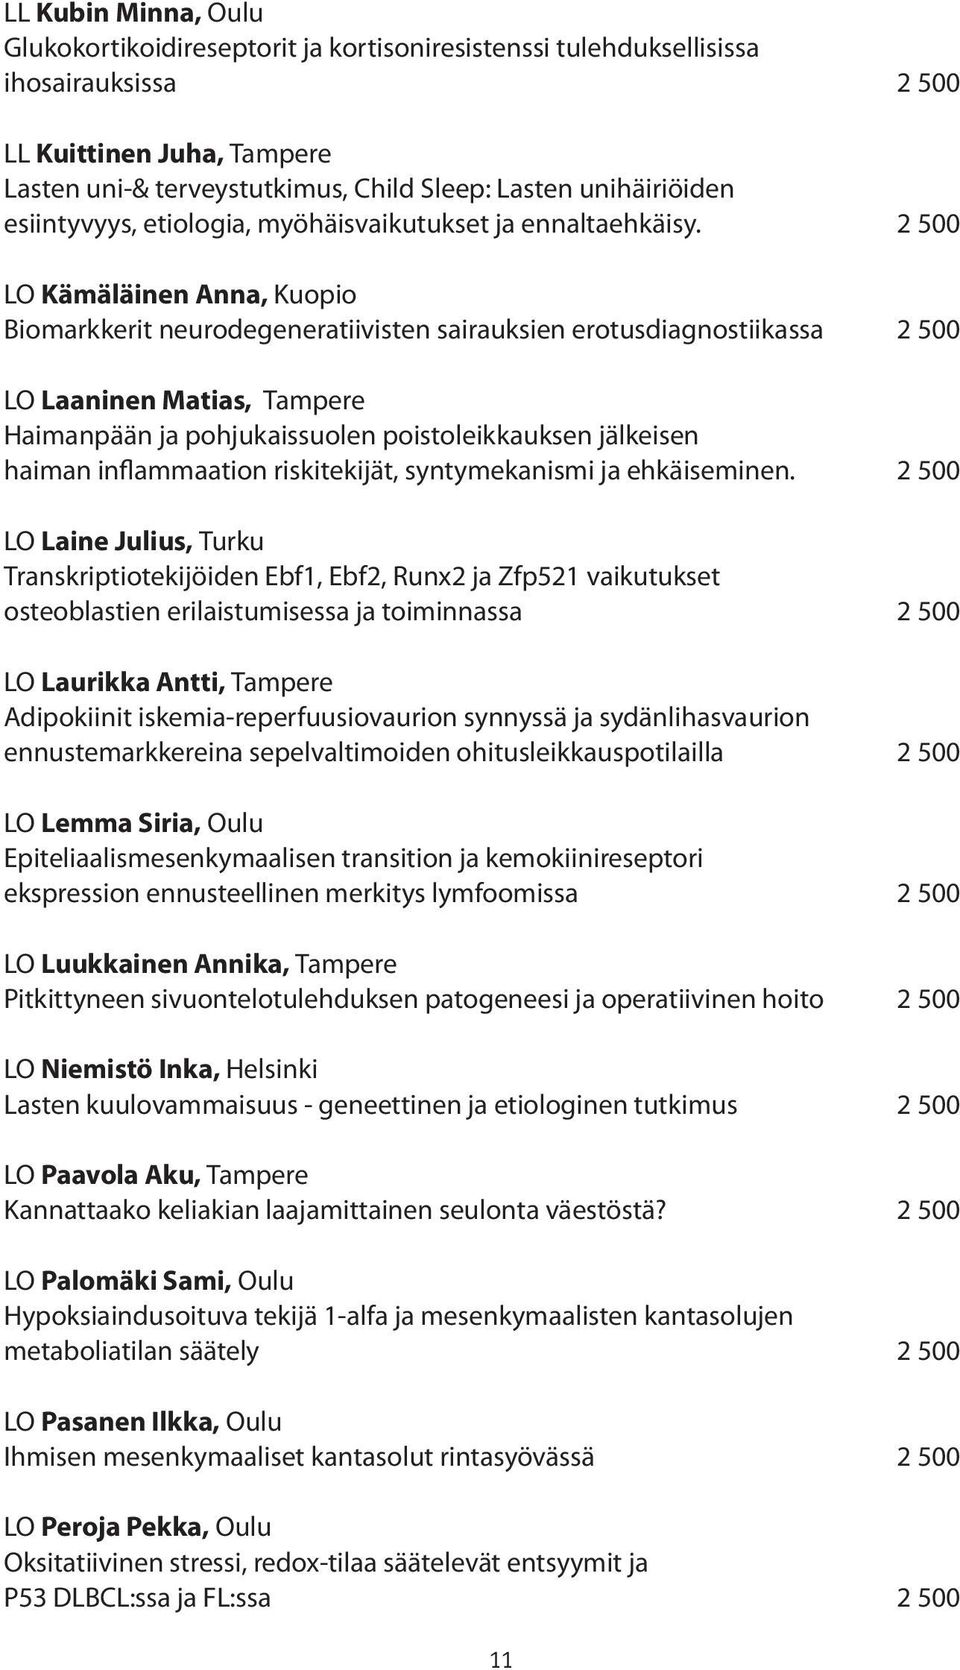 2 500 LO Kämäläinen Anna, Kuopio Biomarkkerit neurodegeneratiivisten sairauksien erotusdiagnostiikassa 2 500 LO Laaninen Matias, Tampere Haimanpään ja pohjukaissuolen poistoleikkauksen jälkeisen